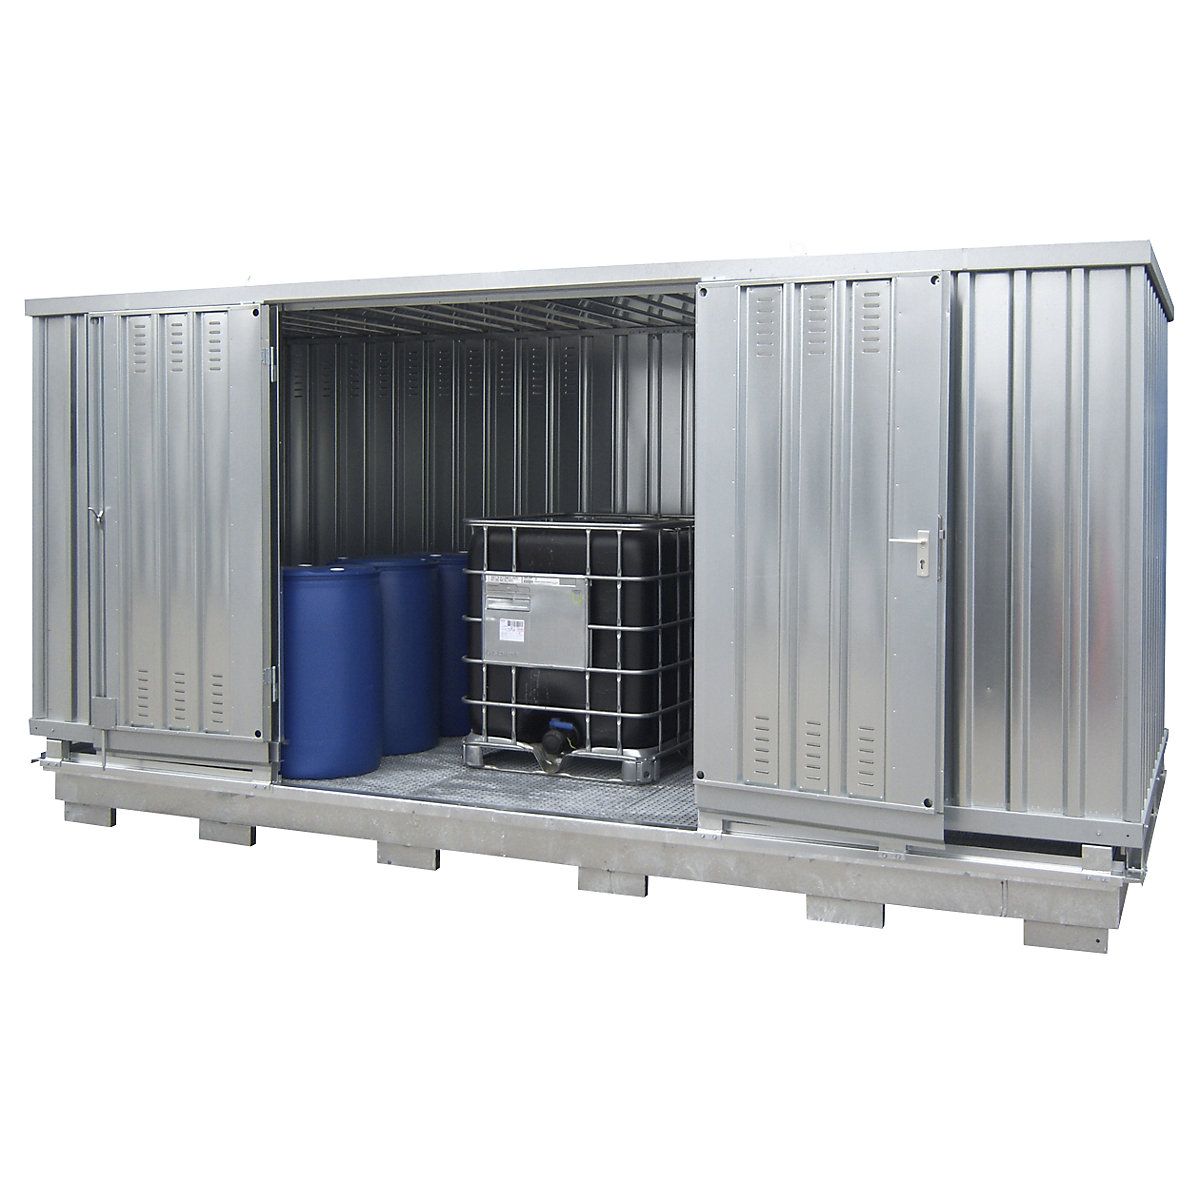 Kontejner za pasivno skladištenje opasnih zapaljivih tvari - LaCont